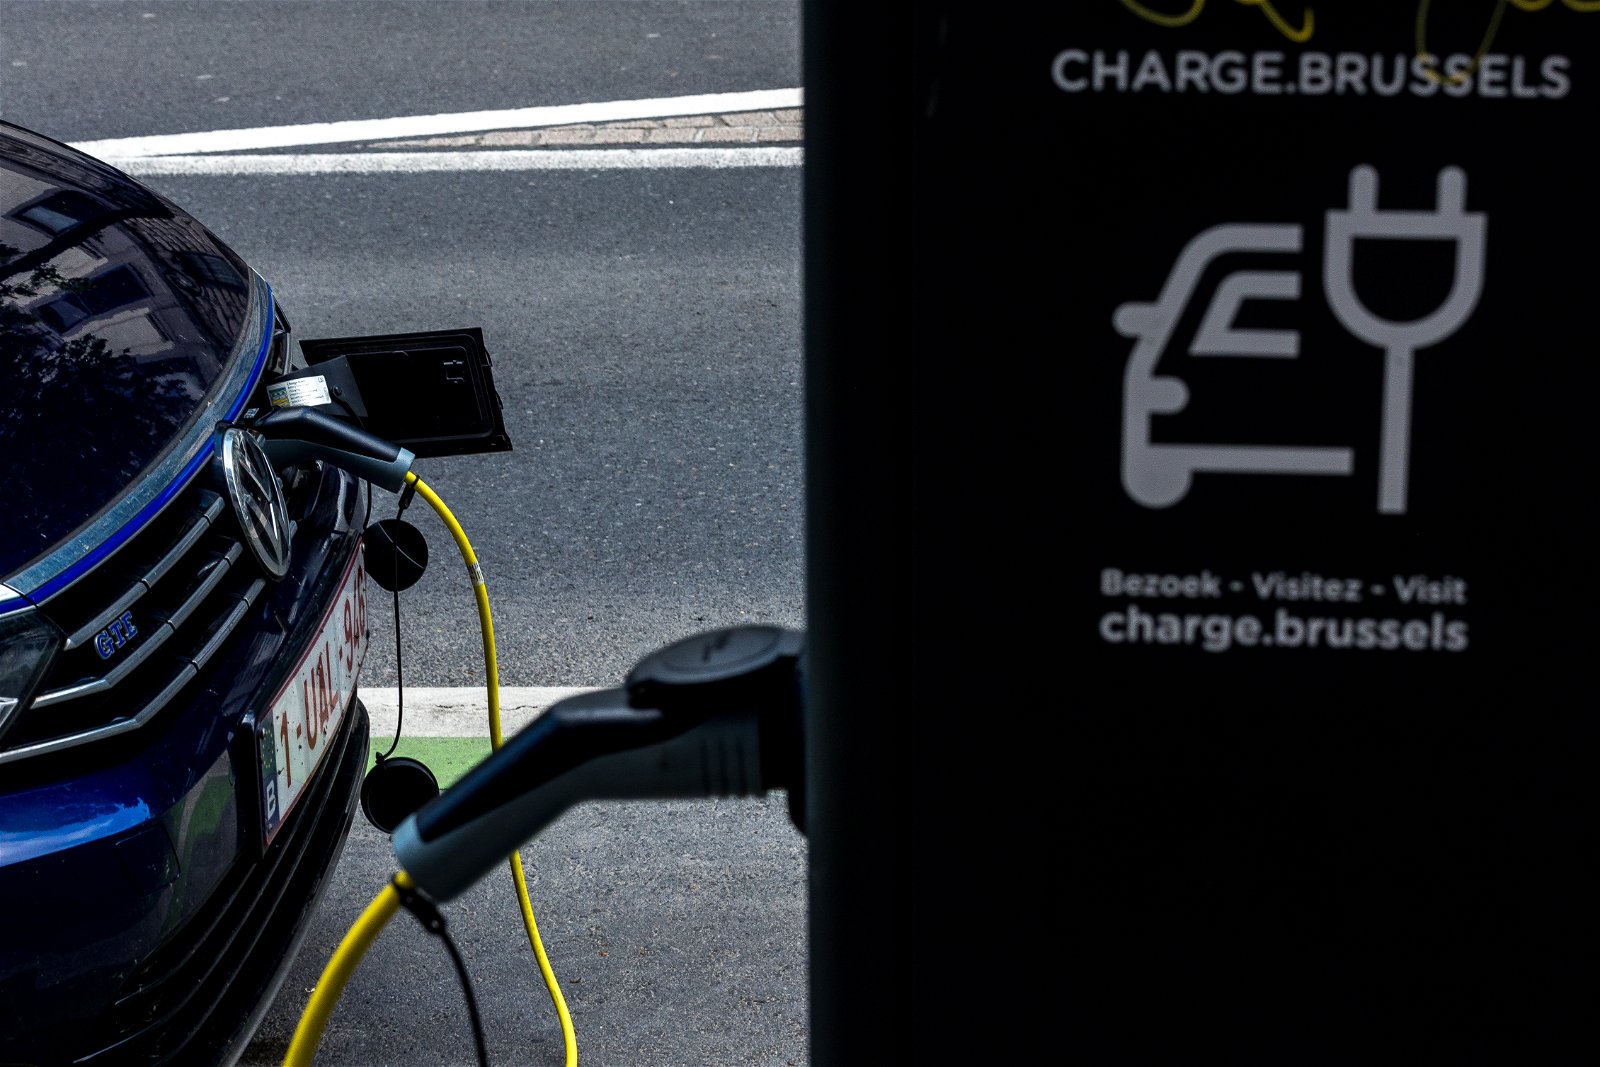 À Bruxelles, les voitures électriques en charge ne paient pas de